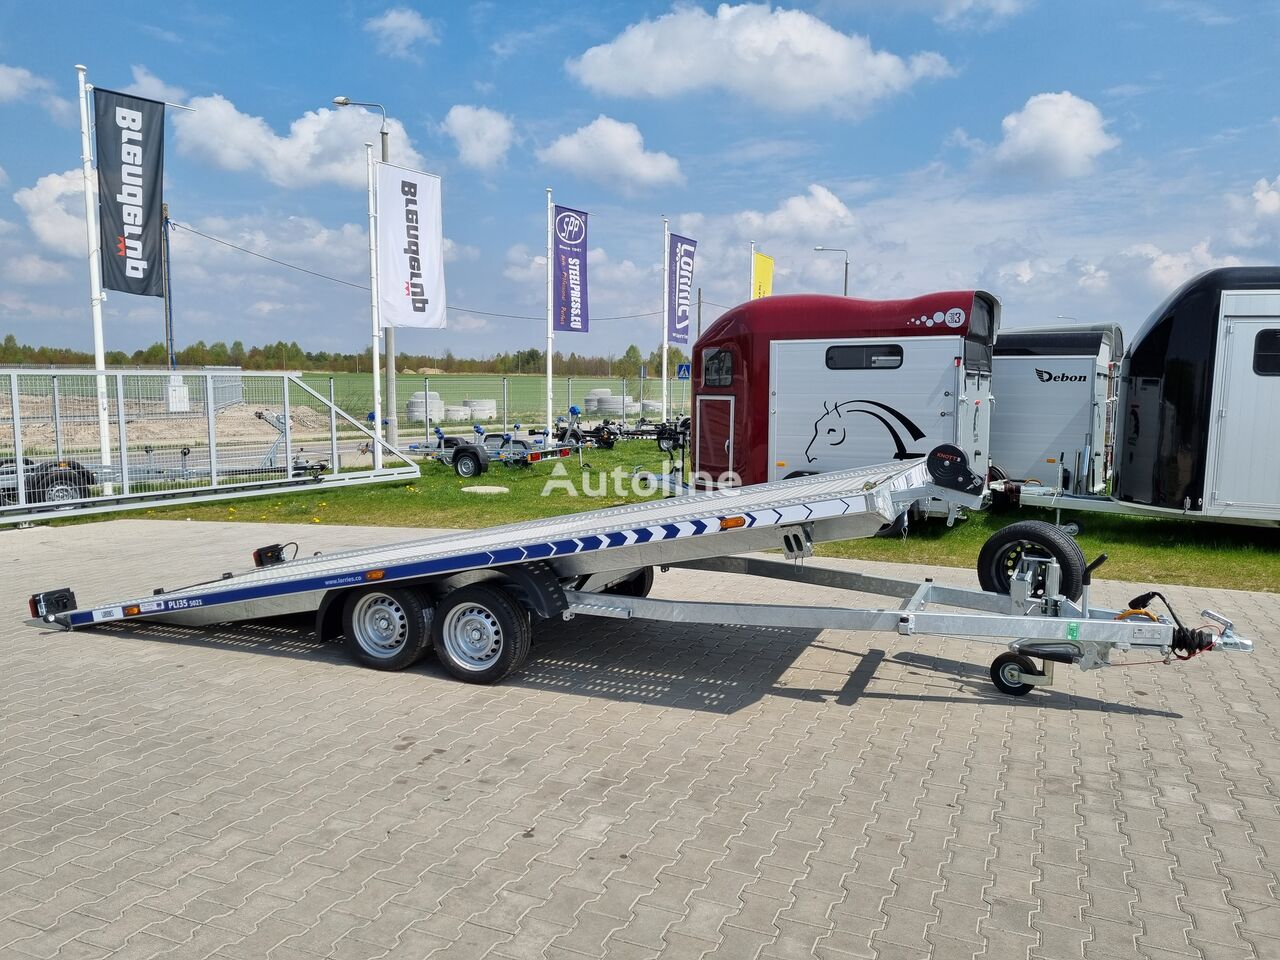 новый прицеп автовоз Lorries PLI-35 5021 car trailer 3.5t GVW tilting platform 500 x 210 cm